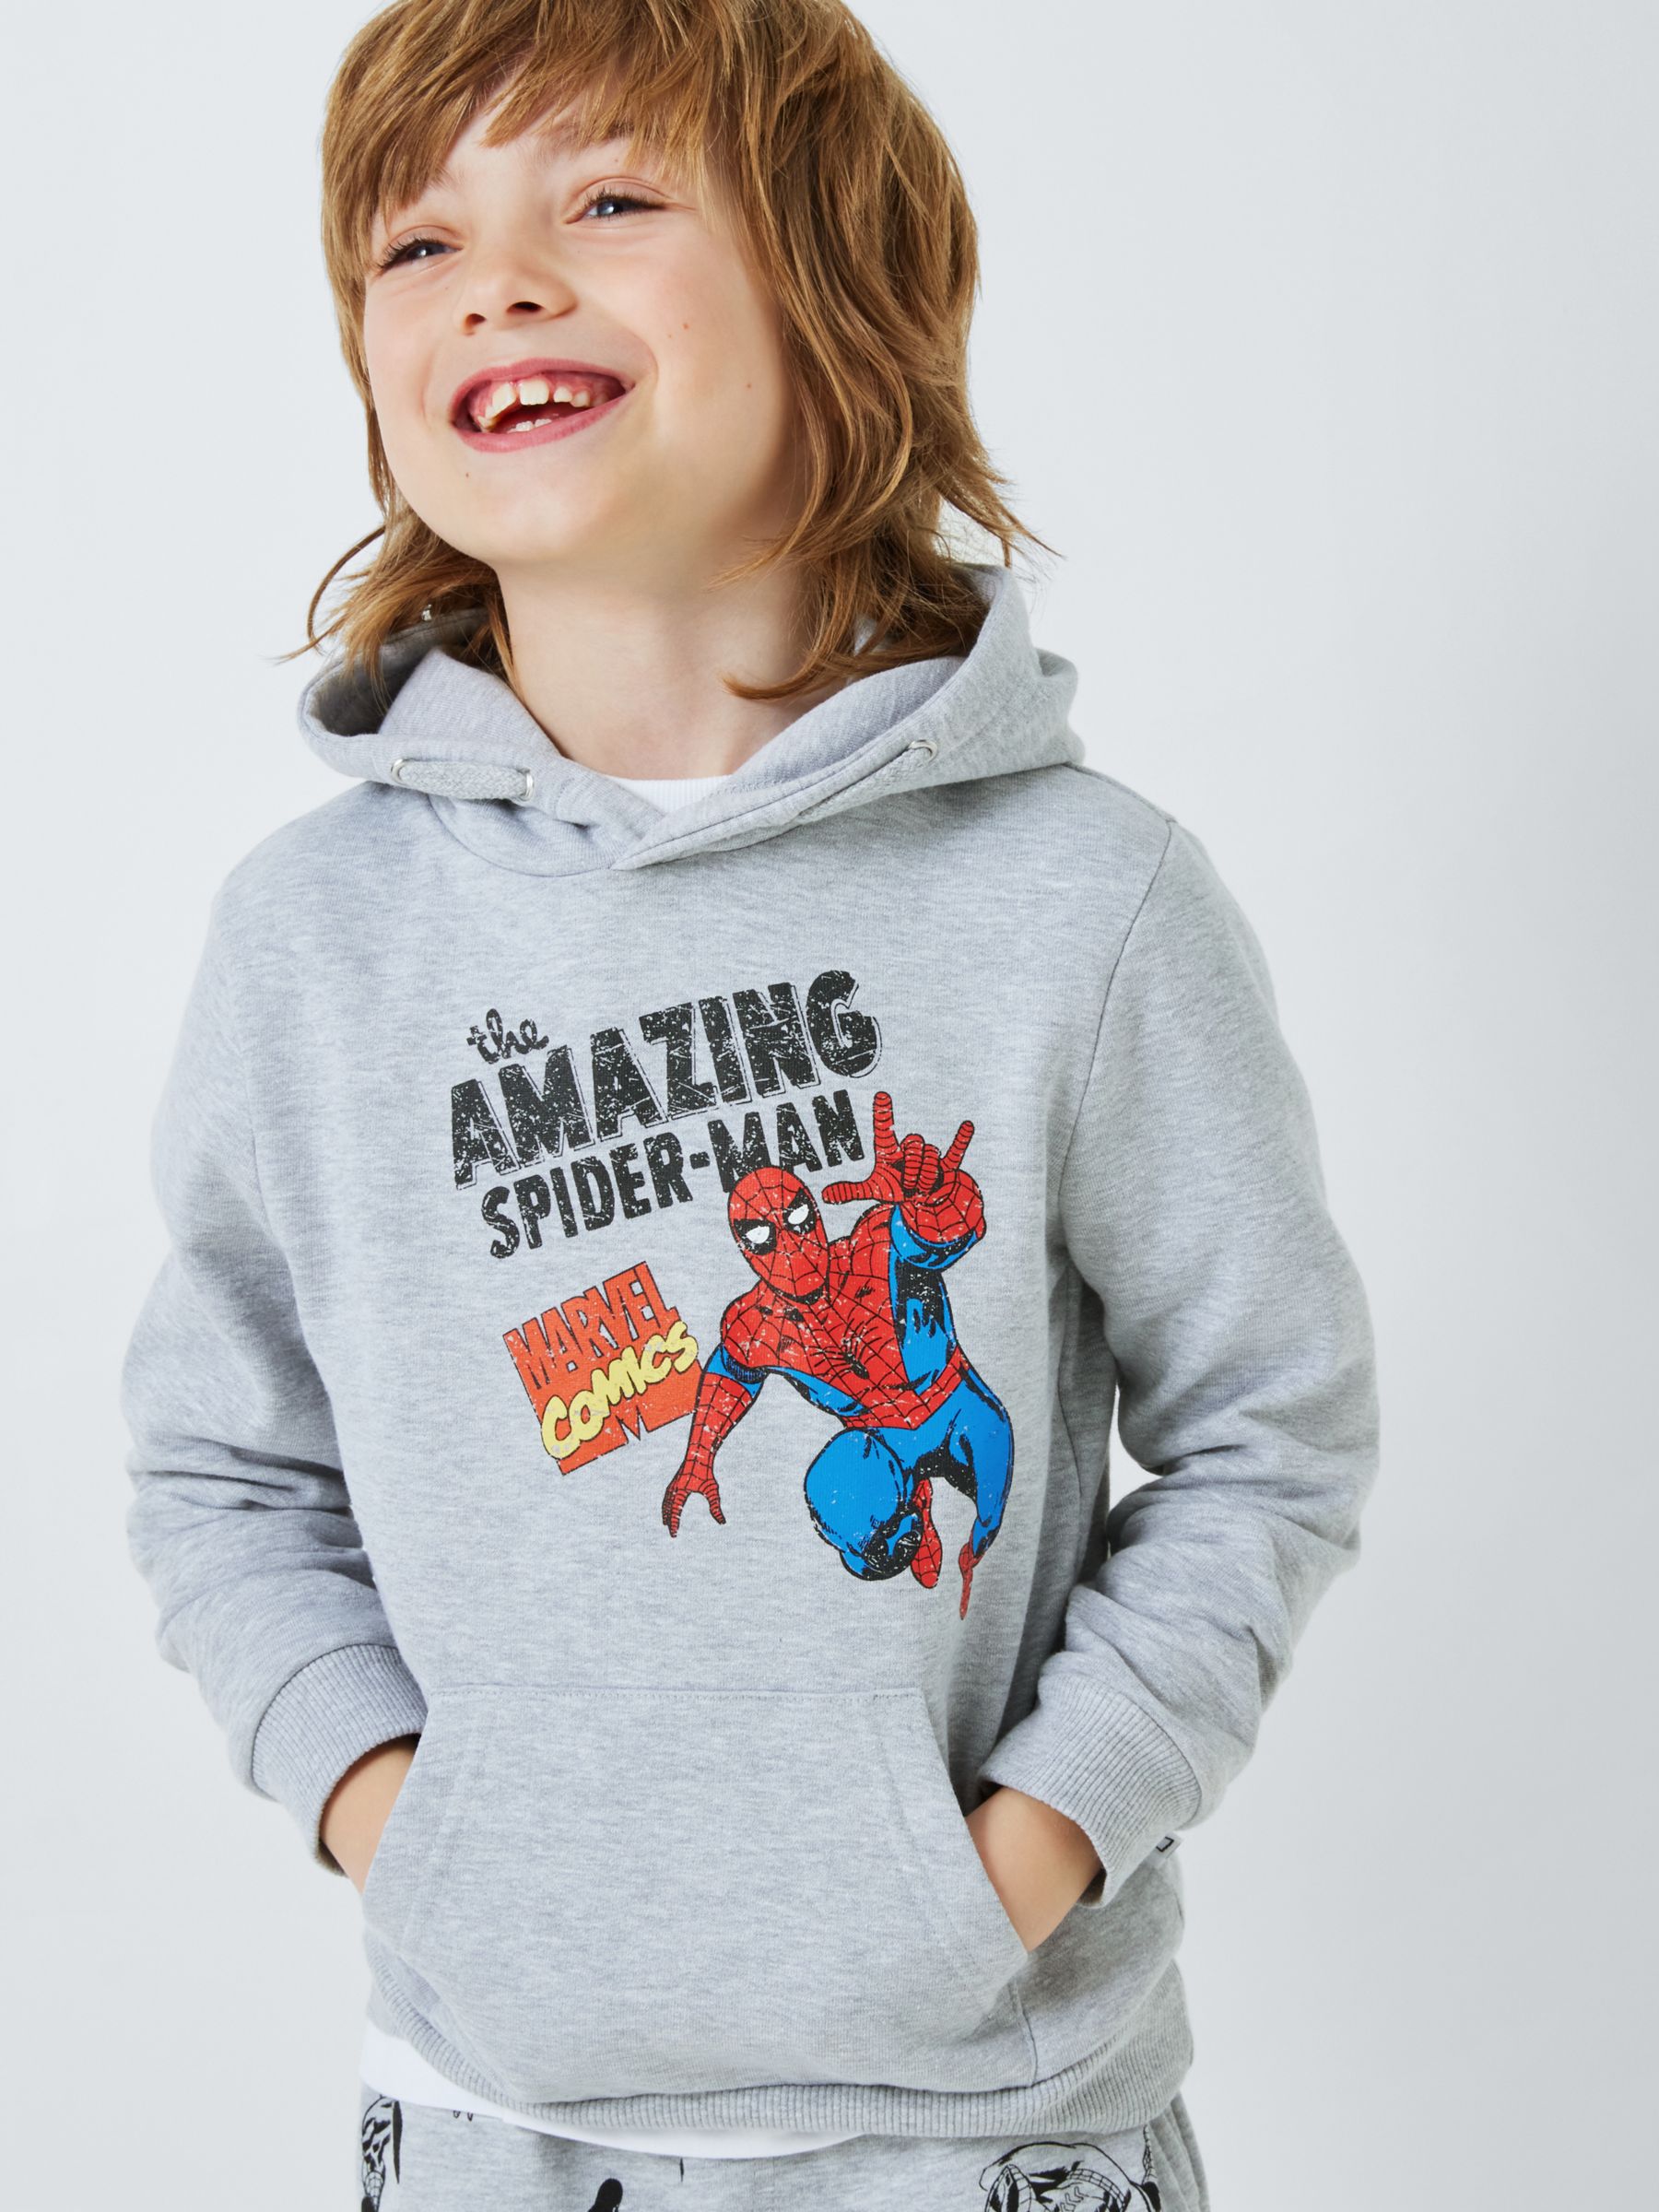 Brand Threads Kids' Spider-Man Hoodie, Grey, 8-9 years